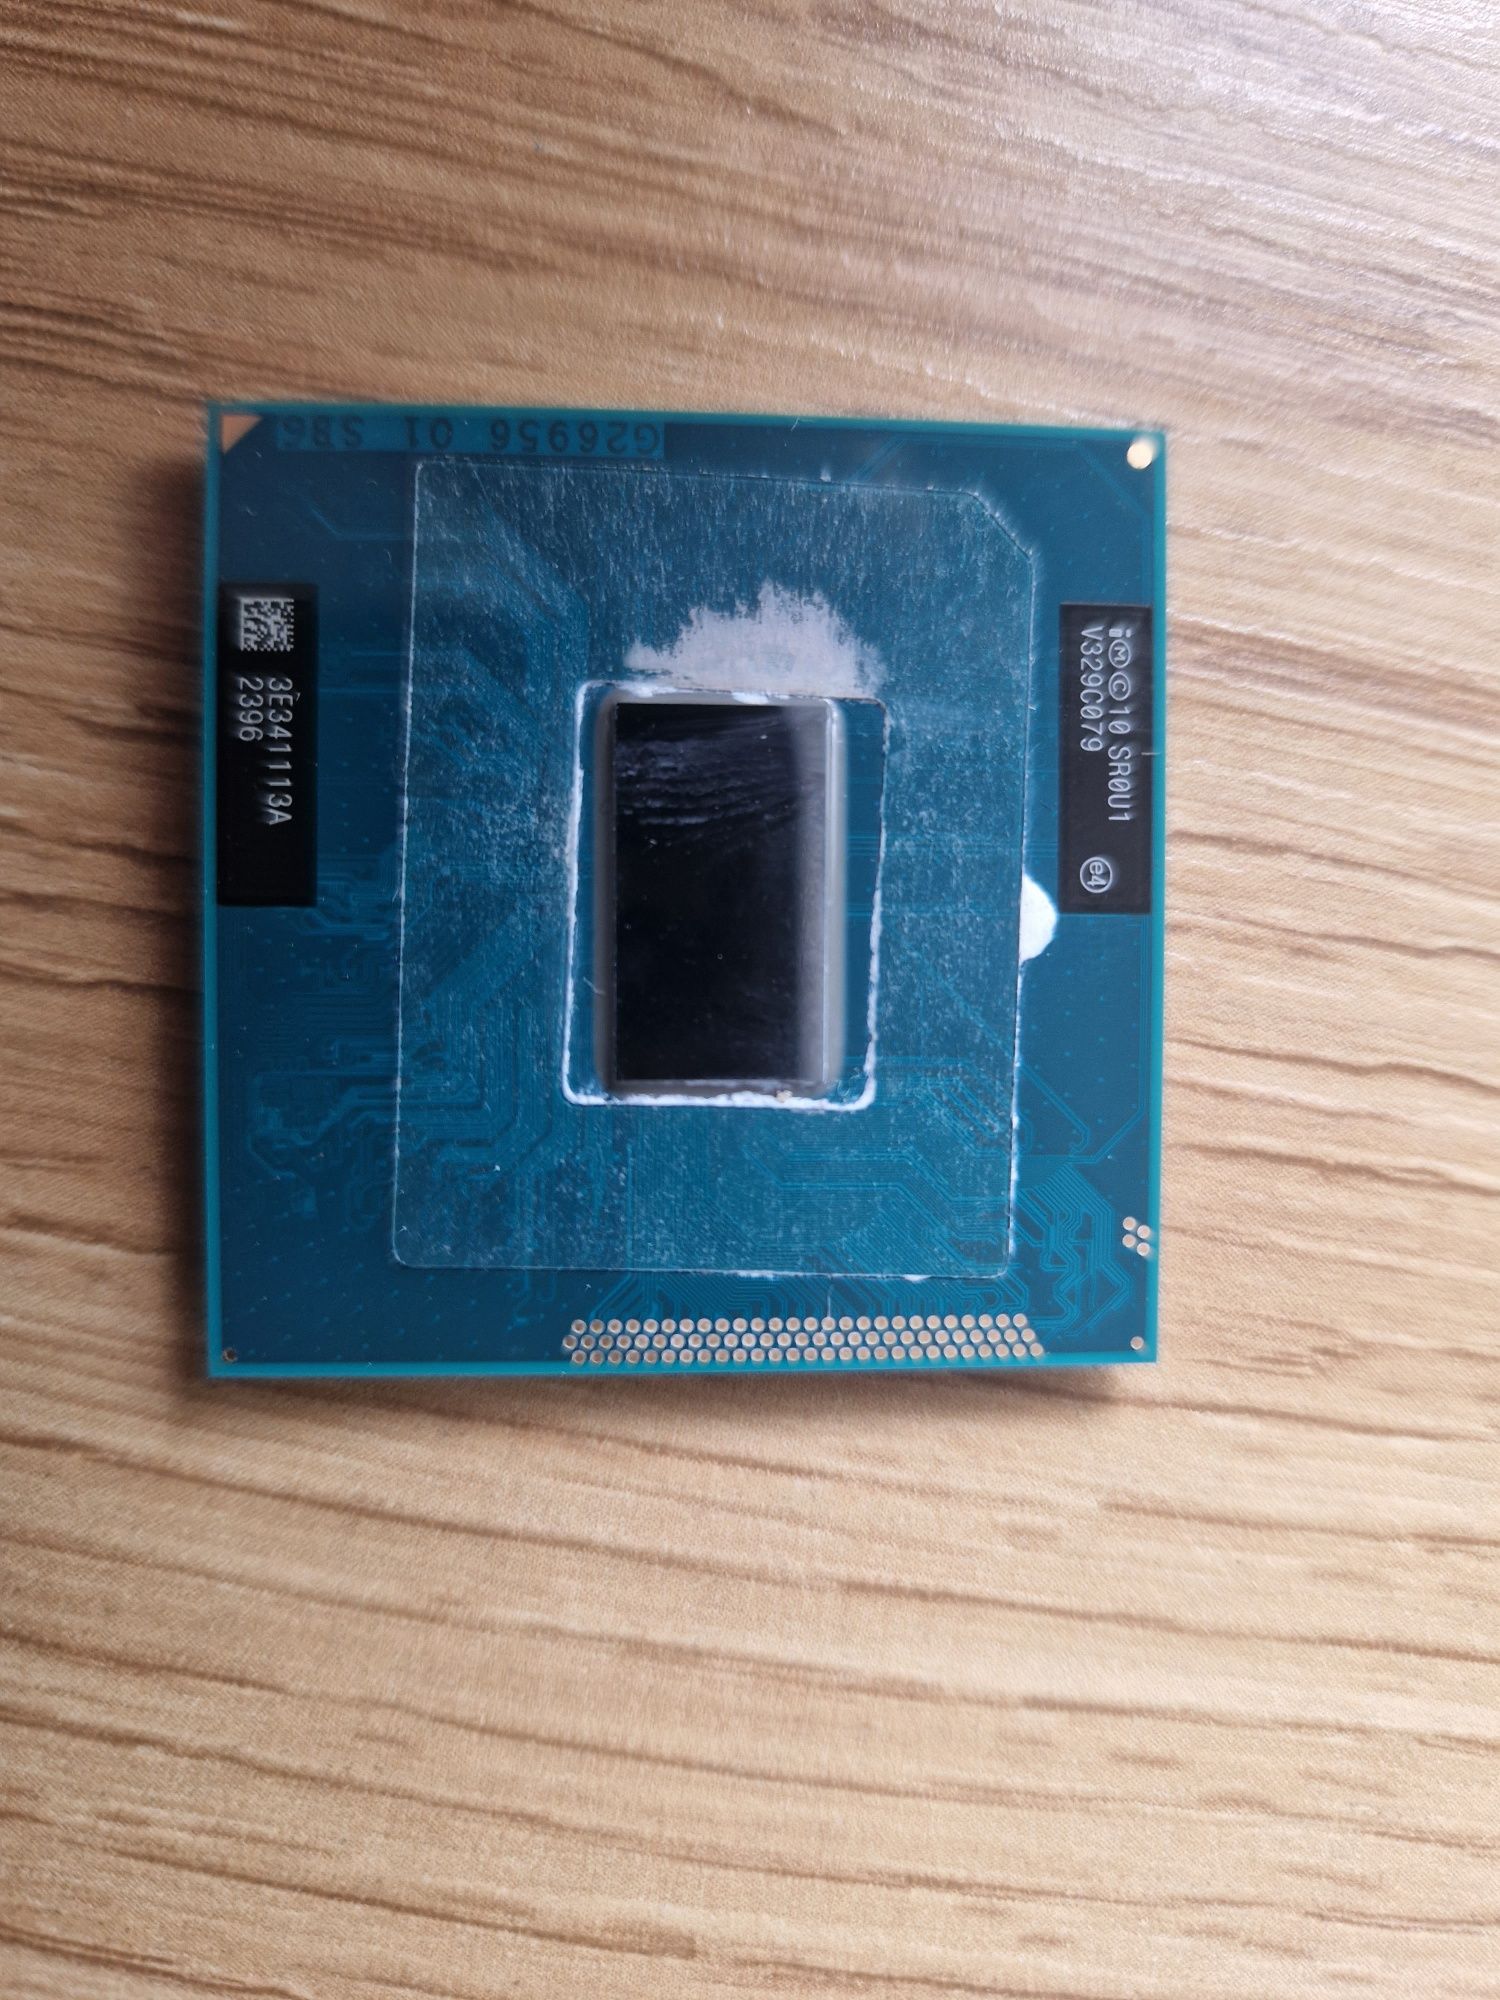 Processor Pentium 2020m